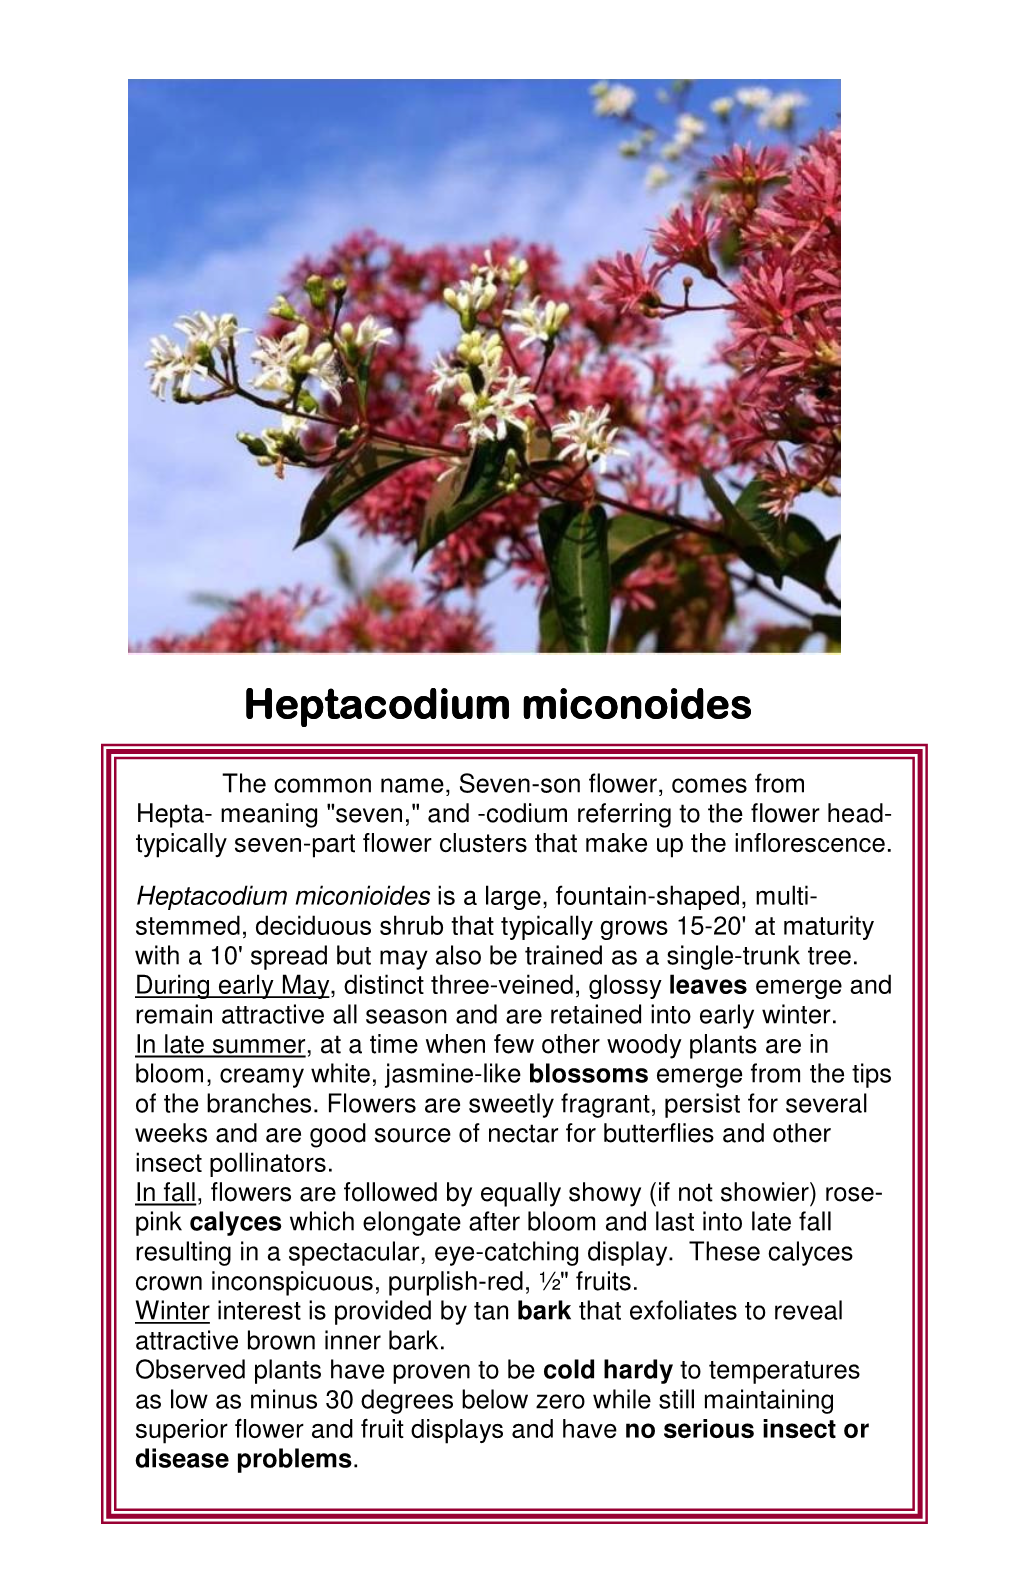 Heptacodium Miconoides